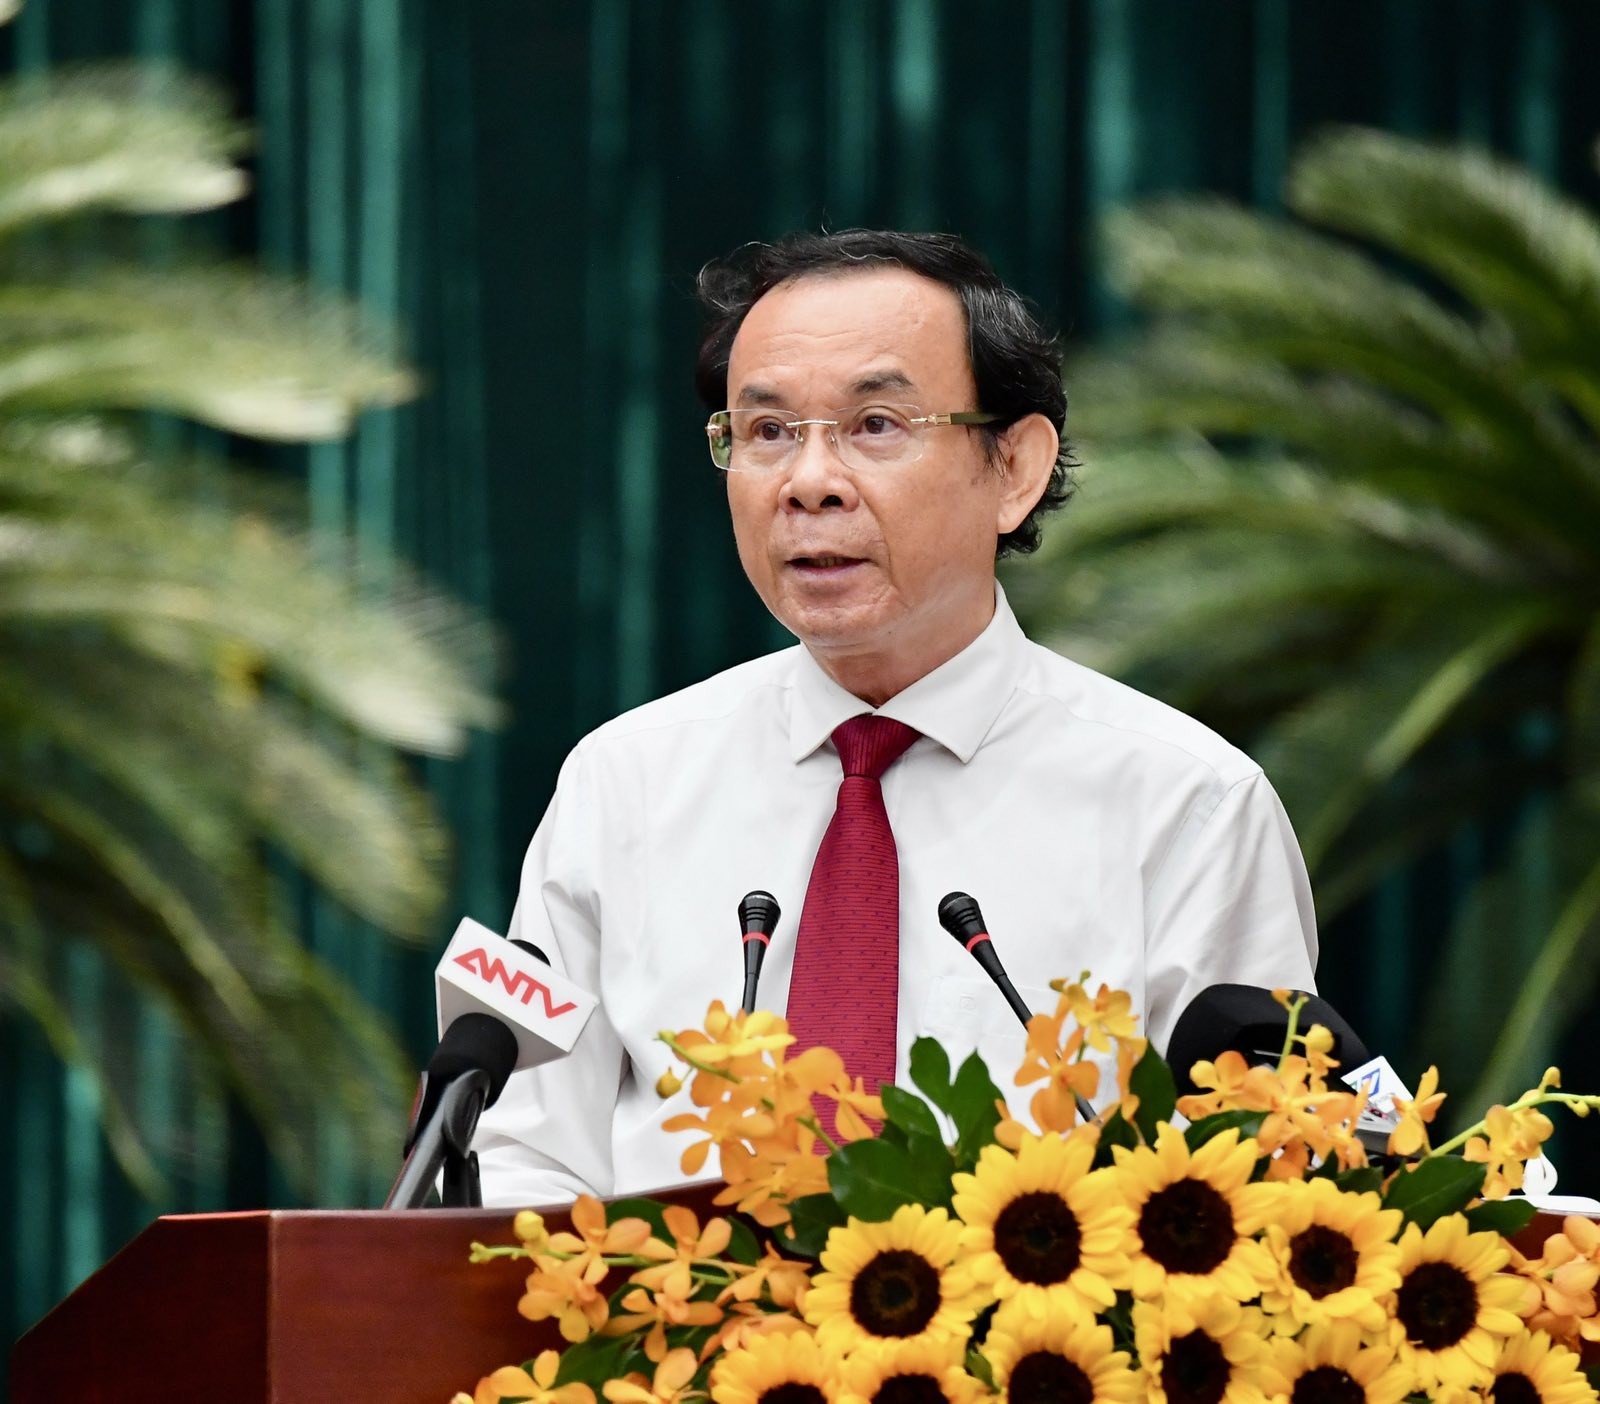 Đồng chí Nguyễn Văn Nên, Bí thư Thành ủy phát biểu tại buổi họp mặt (Ảnh: VIỆT DŨNG).